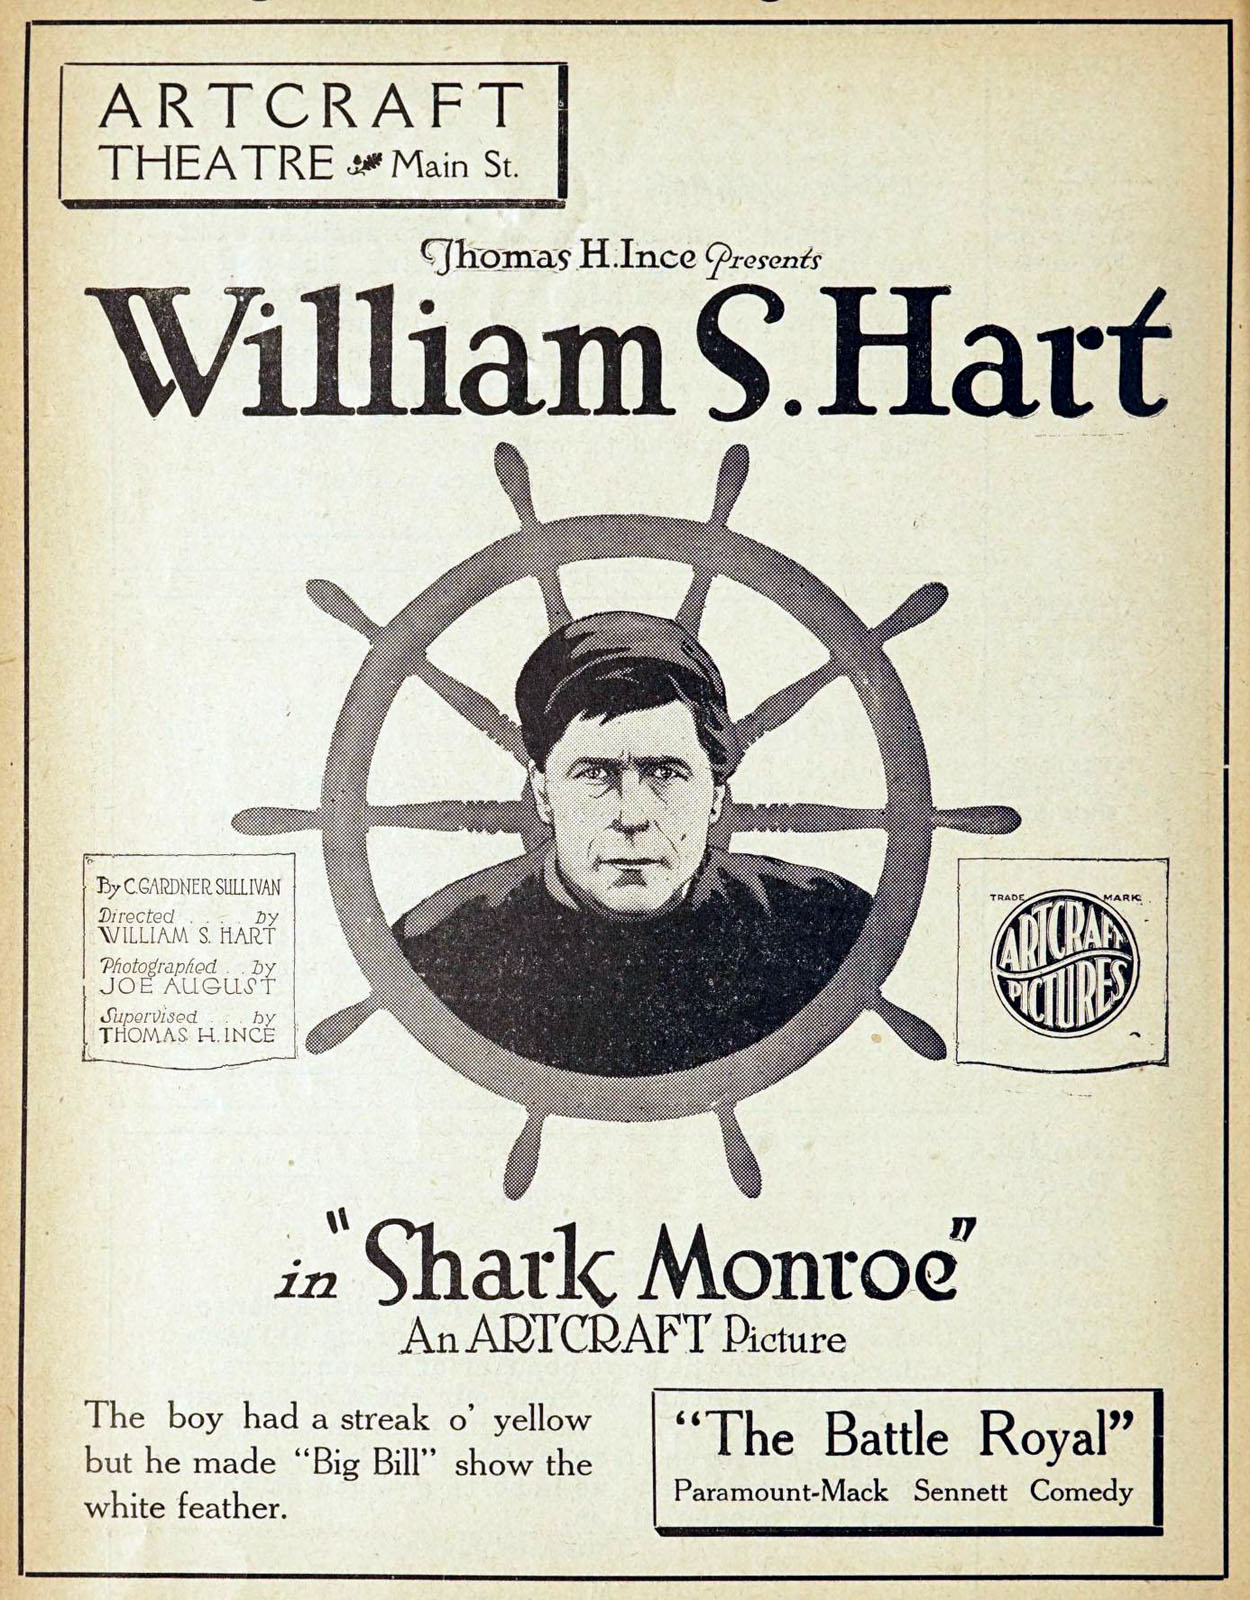 SHARK MONROE